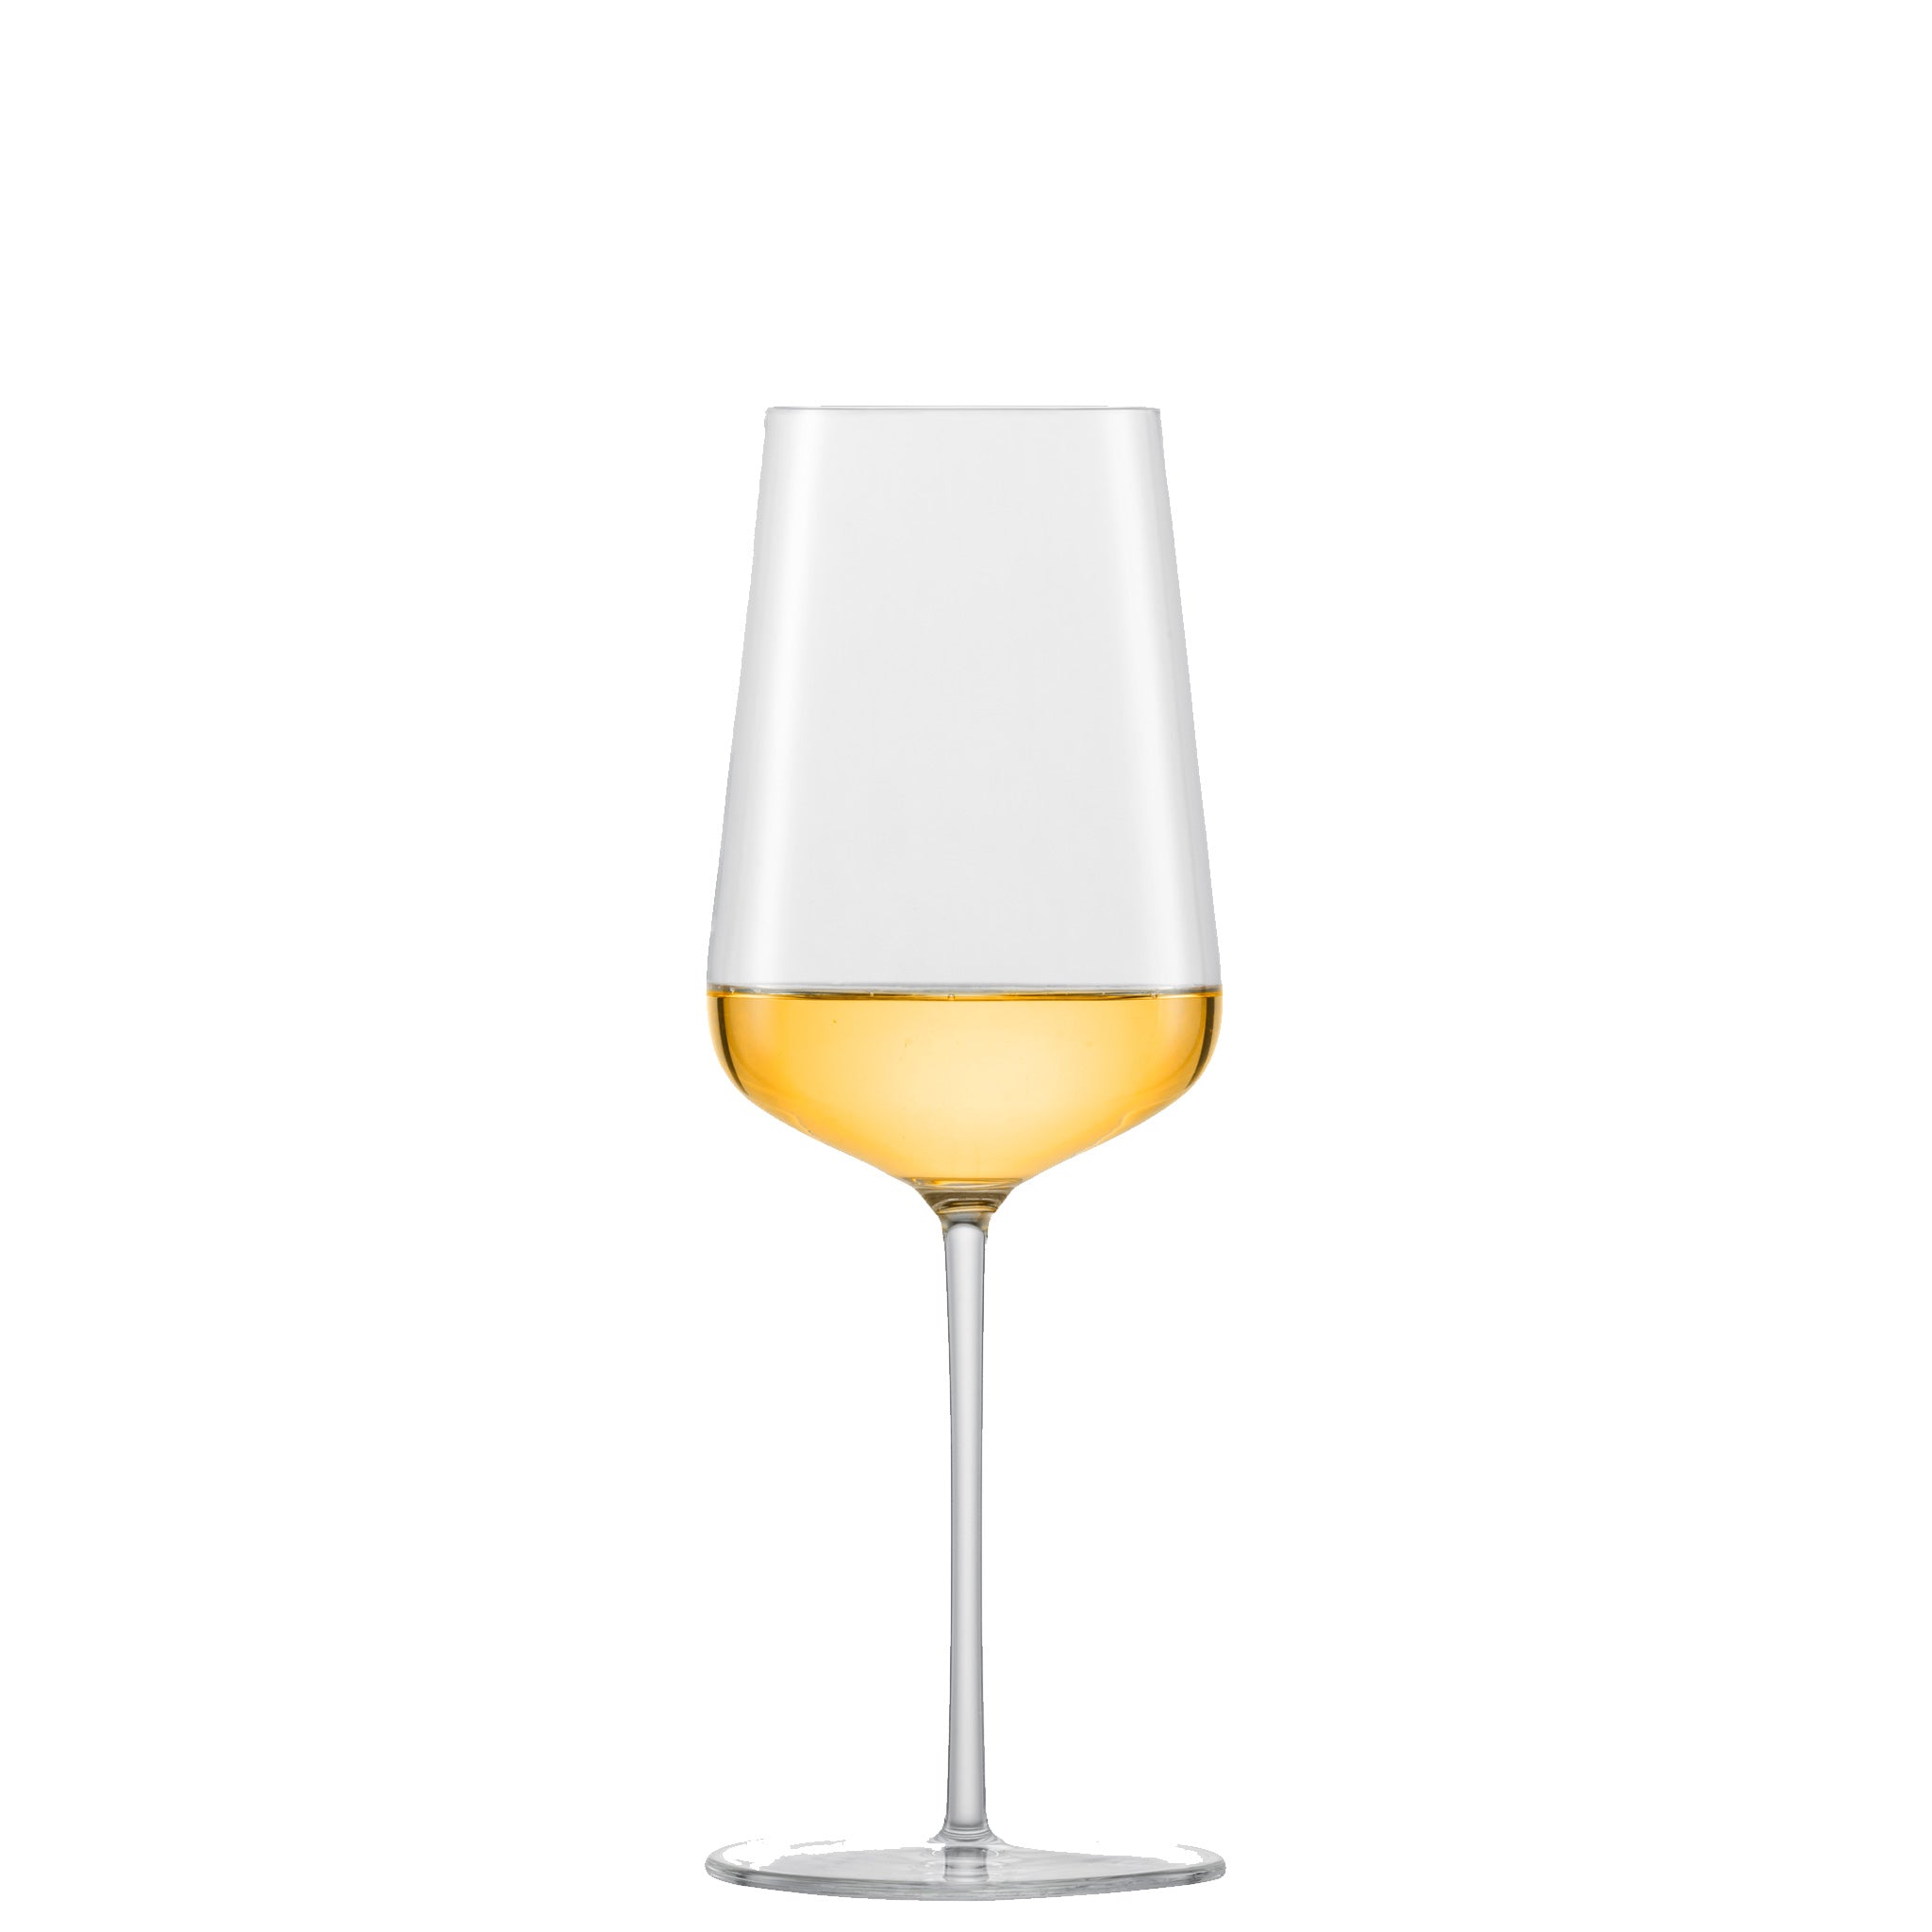 白ワイン用のグラスをお持ちですか。 | ツヴィーゼル公式サイト